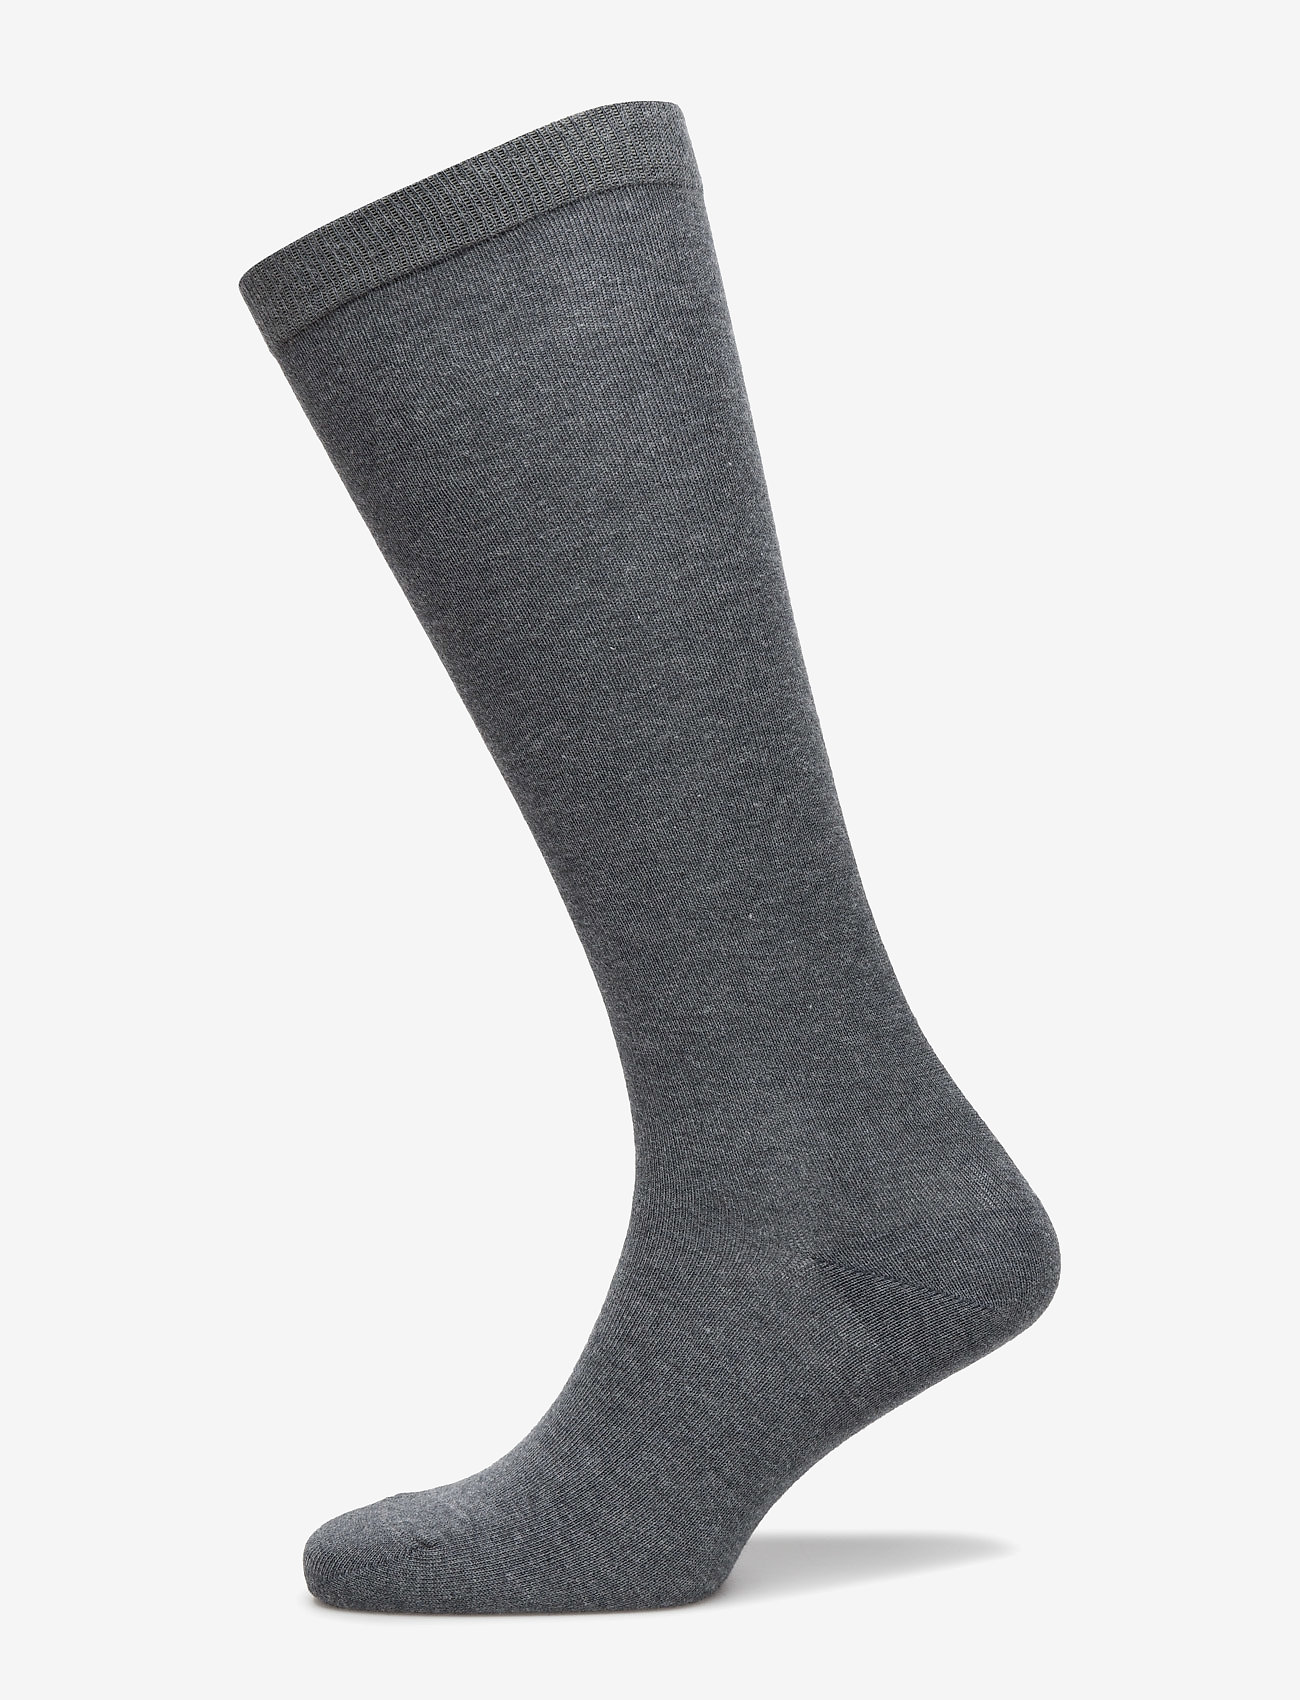 mp Denmark - Cotton knee socks - lägsta priserna - 497/dark grey - 0